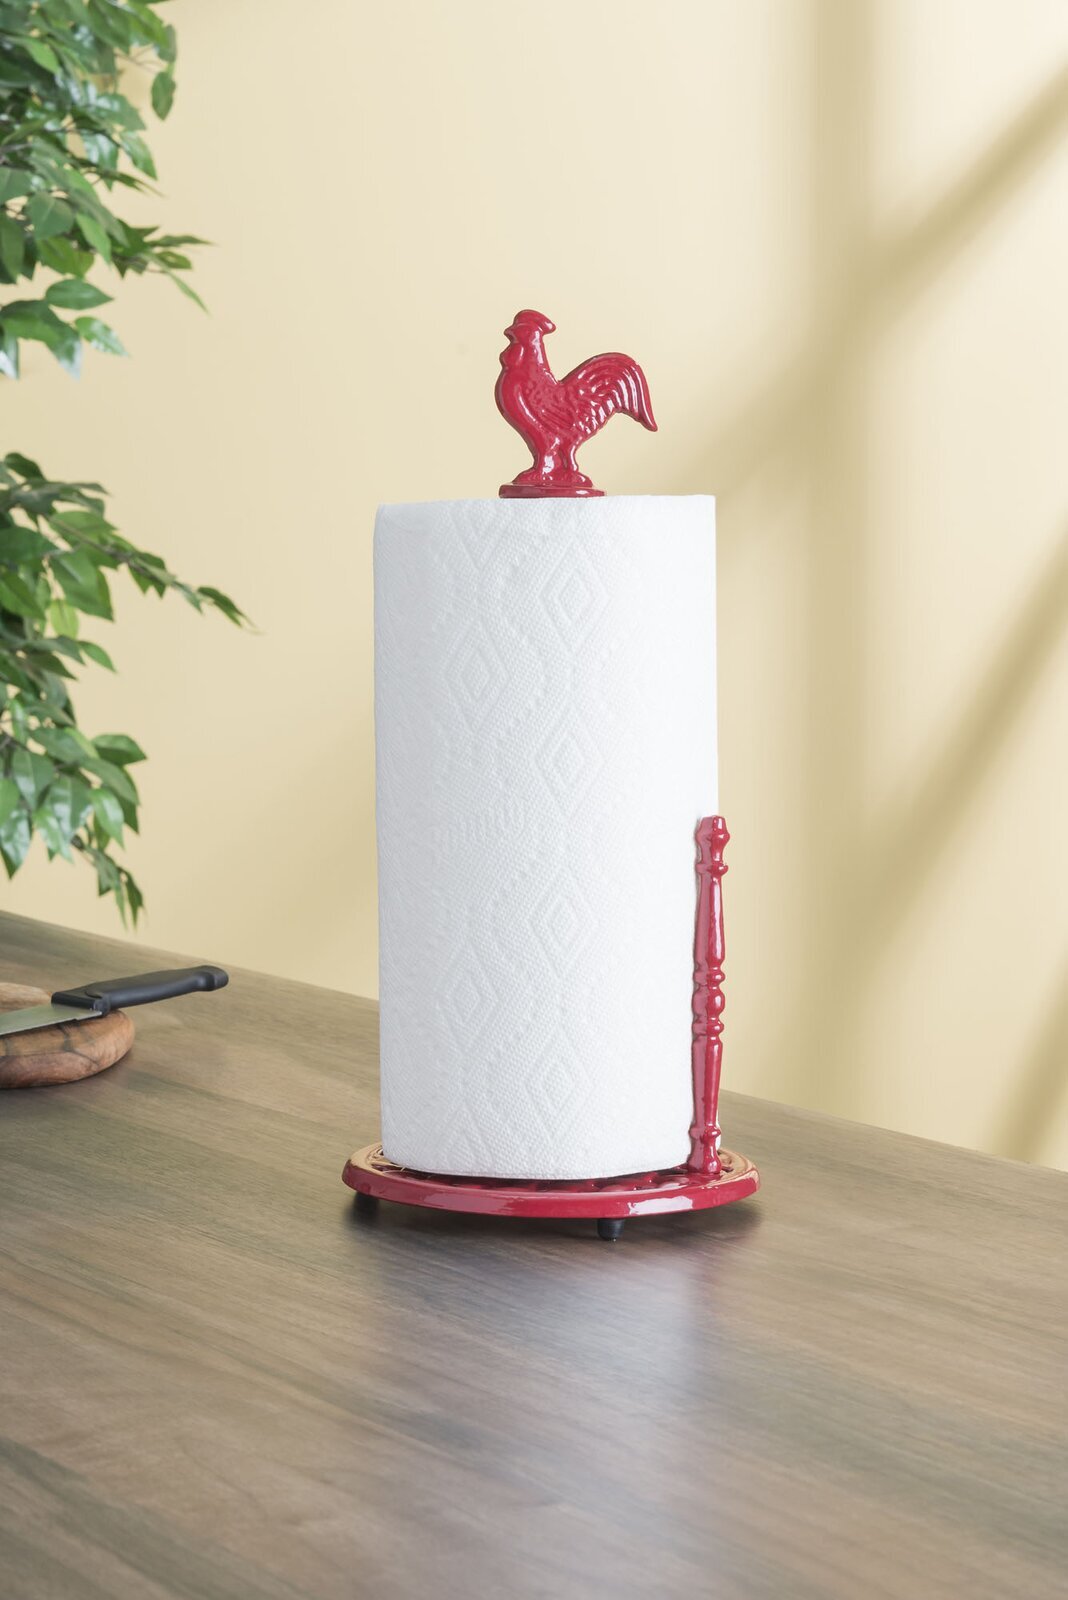 Unique paper towel holder for your decor 